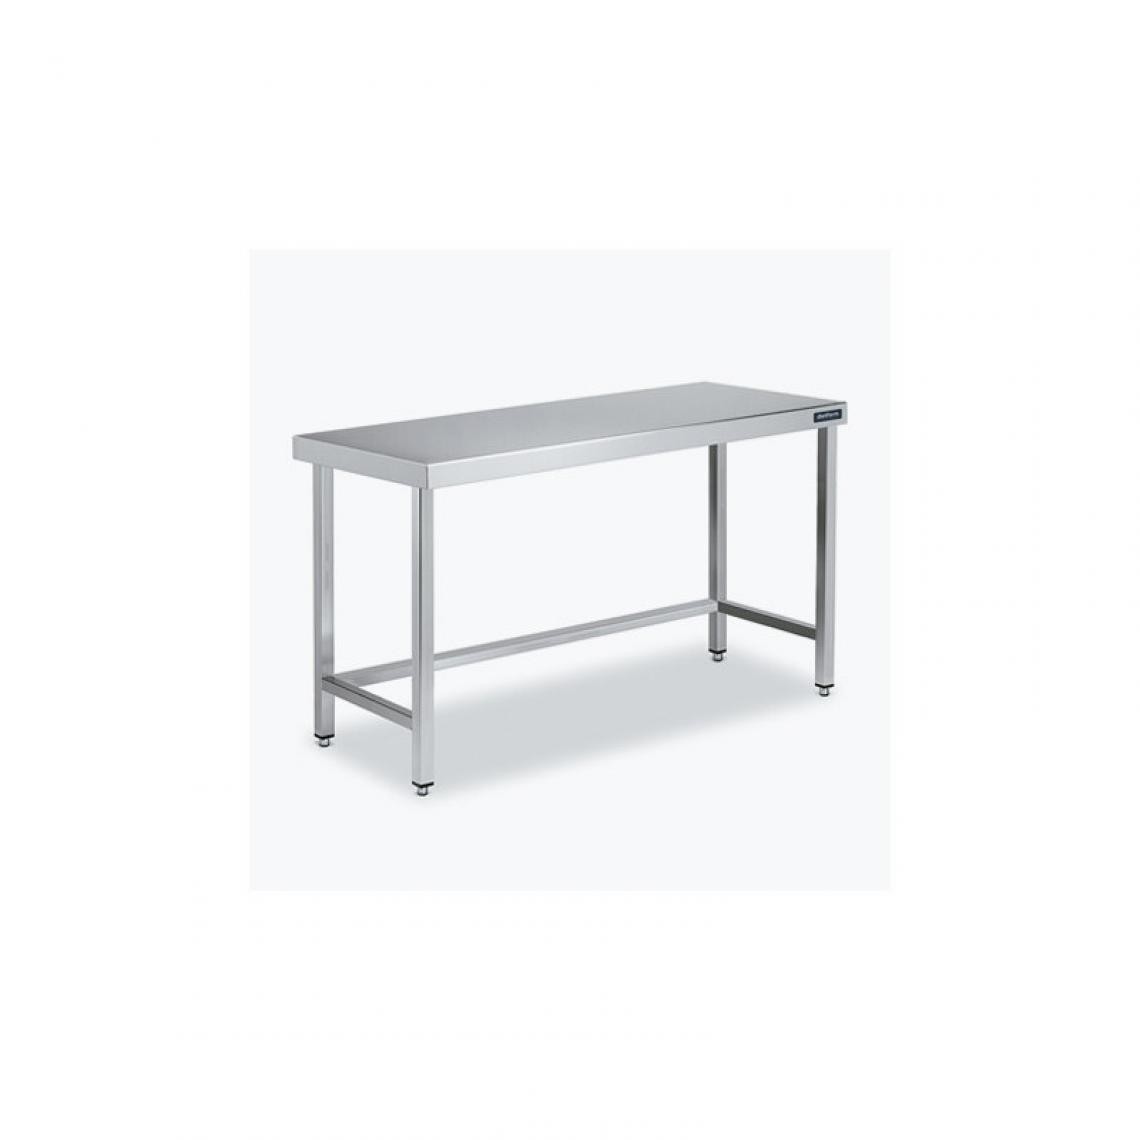 DISTFORM - Table Centrale 600x700X600 avec Renforts - Distform - Inox 18/101900x700x600mm - Tables à manger